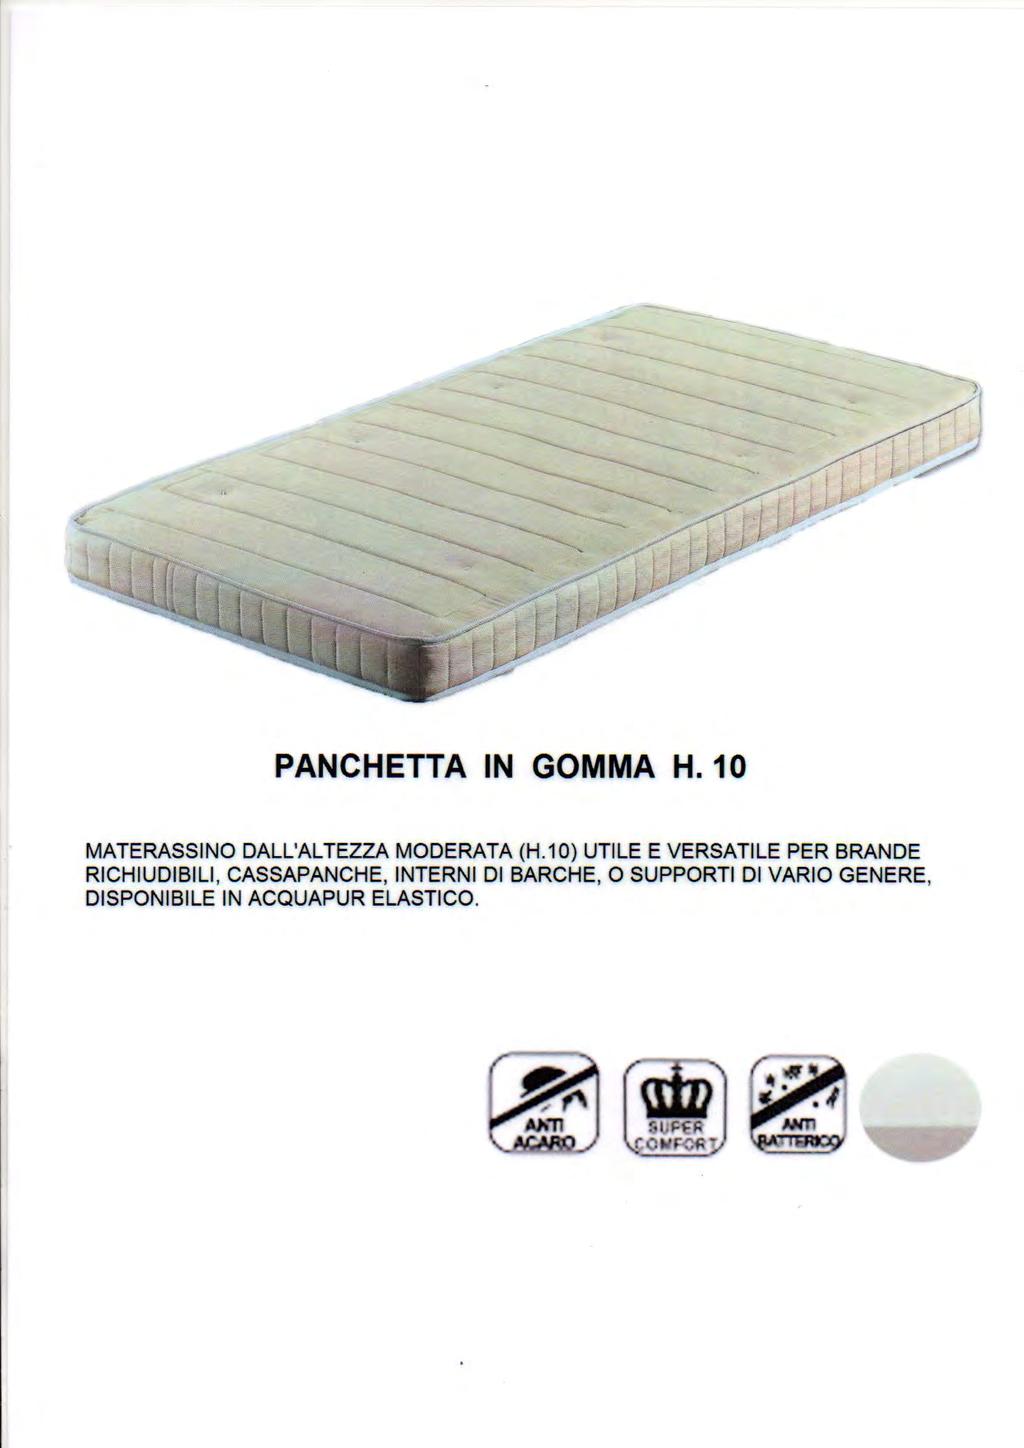 Panchetta in gomma 8 CARATTERISTICHE: Materassino dall altezza moderata (cm 10 e cm 13) utile e versatile per brande richiudibili,